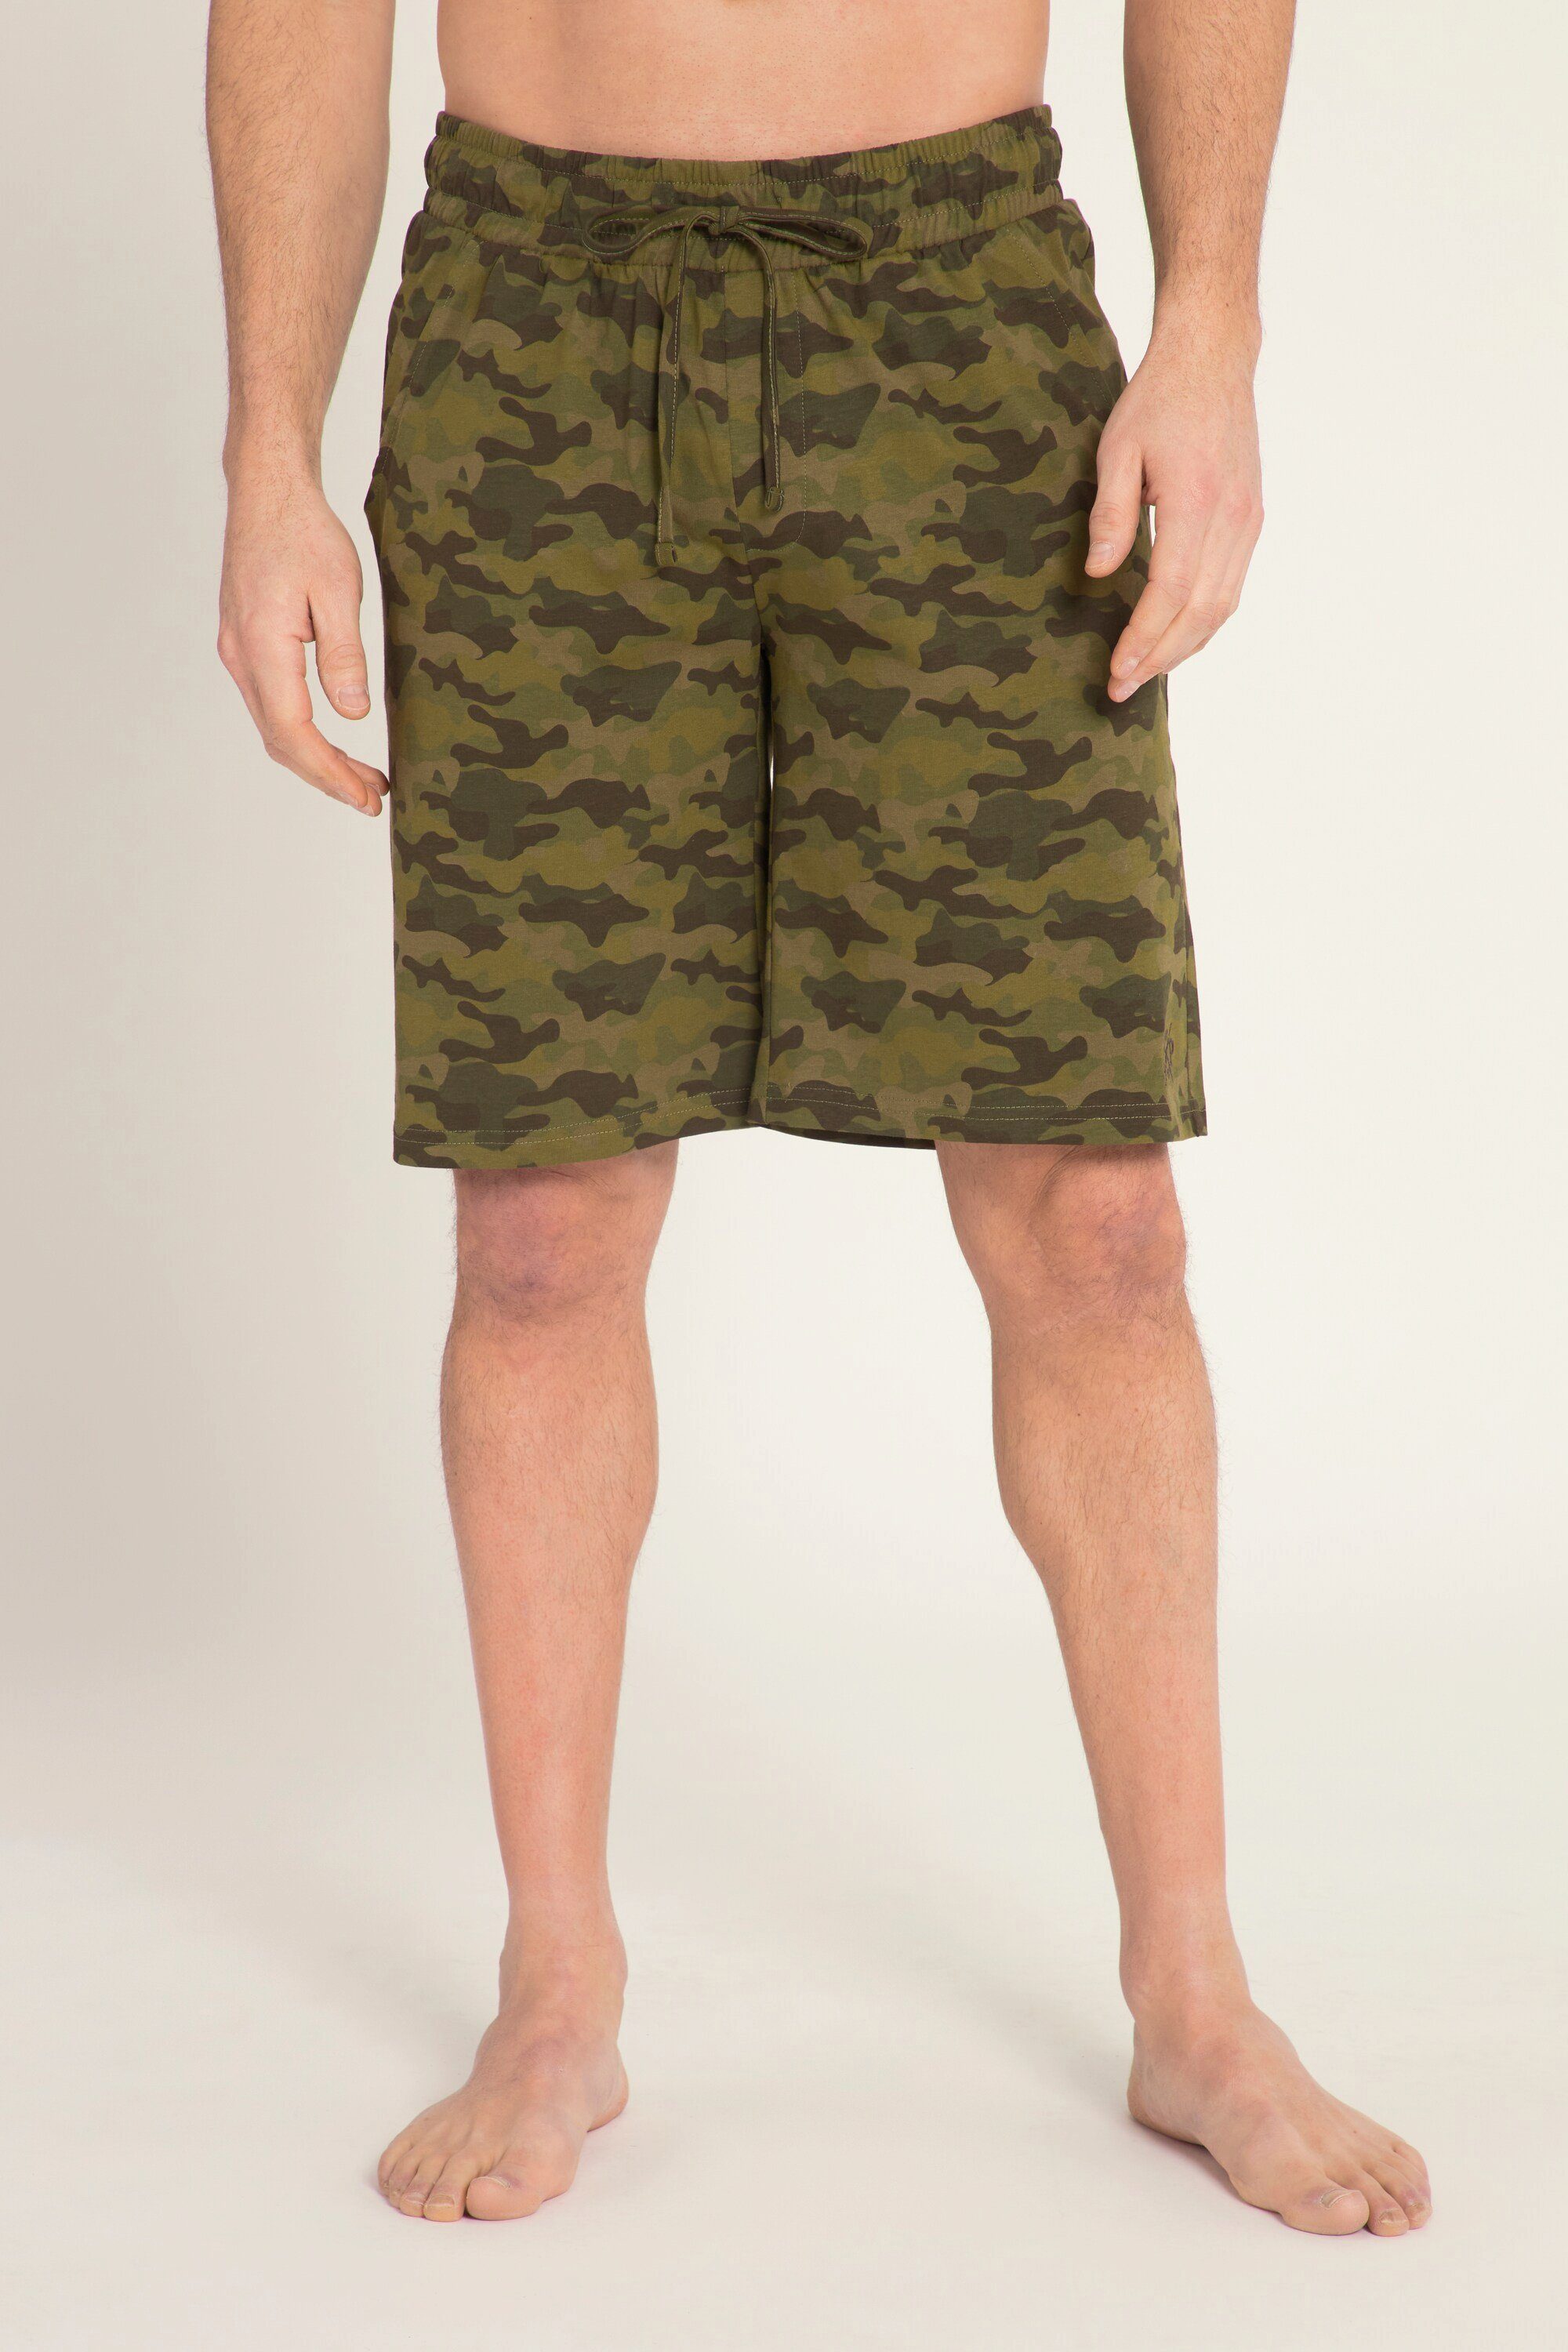 JP1880 Camouflage Bermuda Shorts Print Elastikbund Schlafanzug